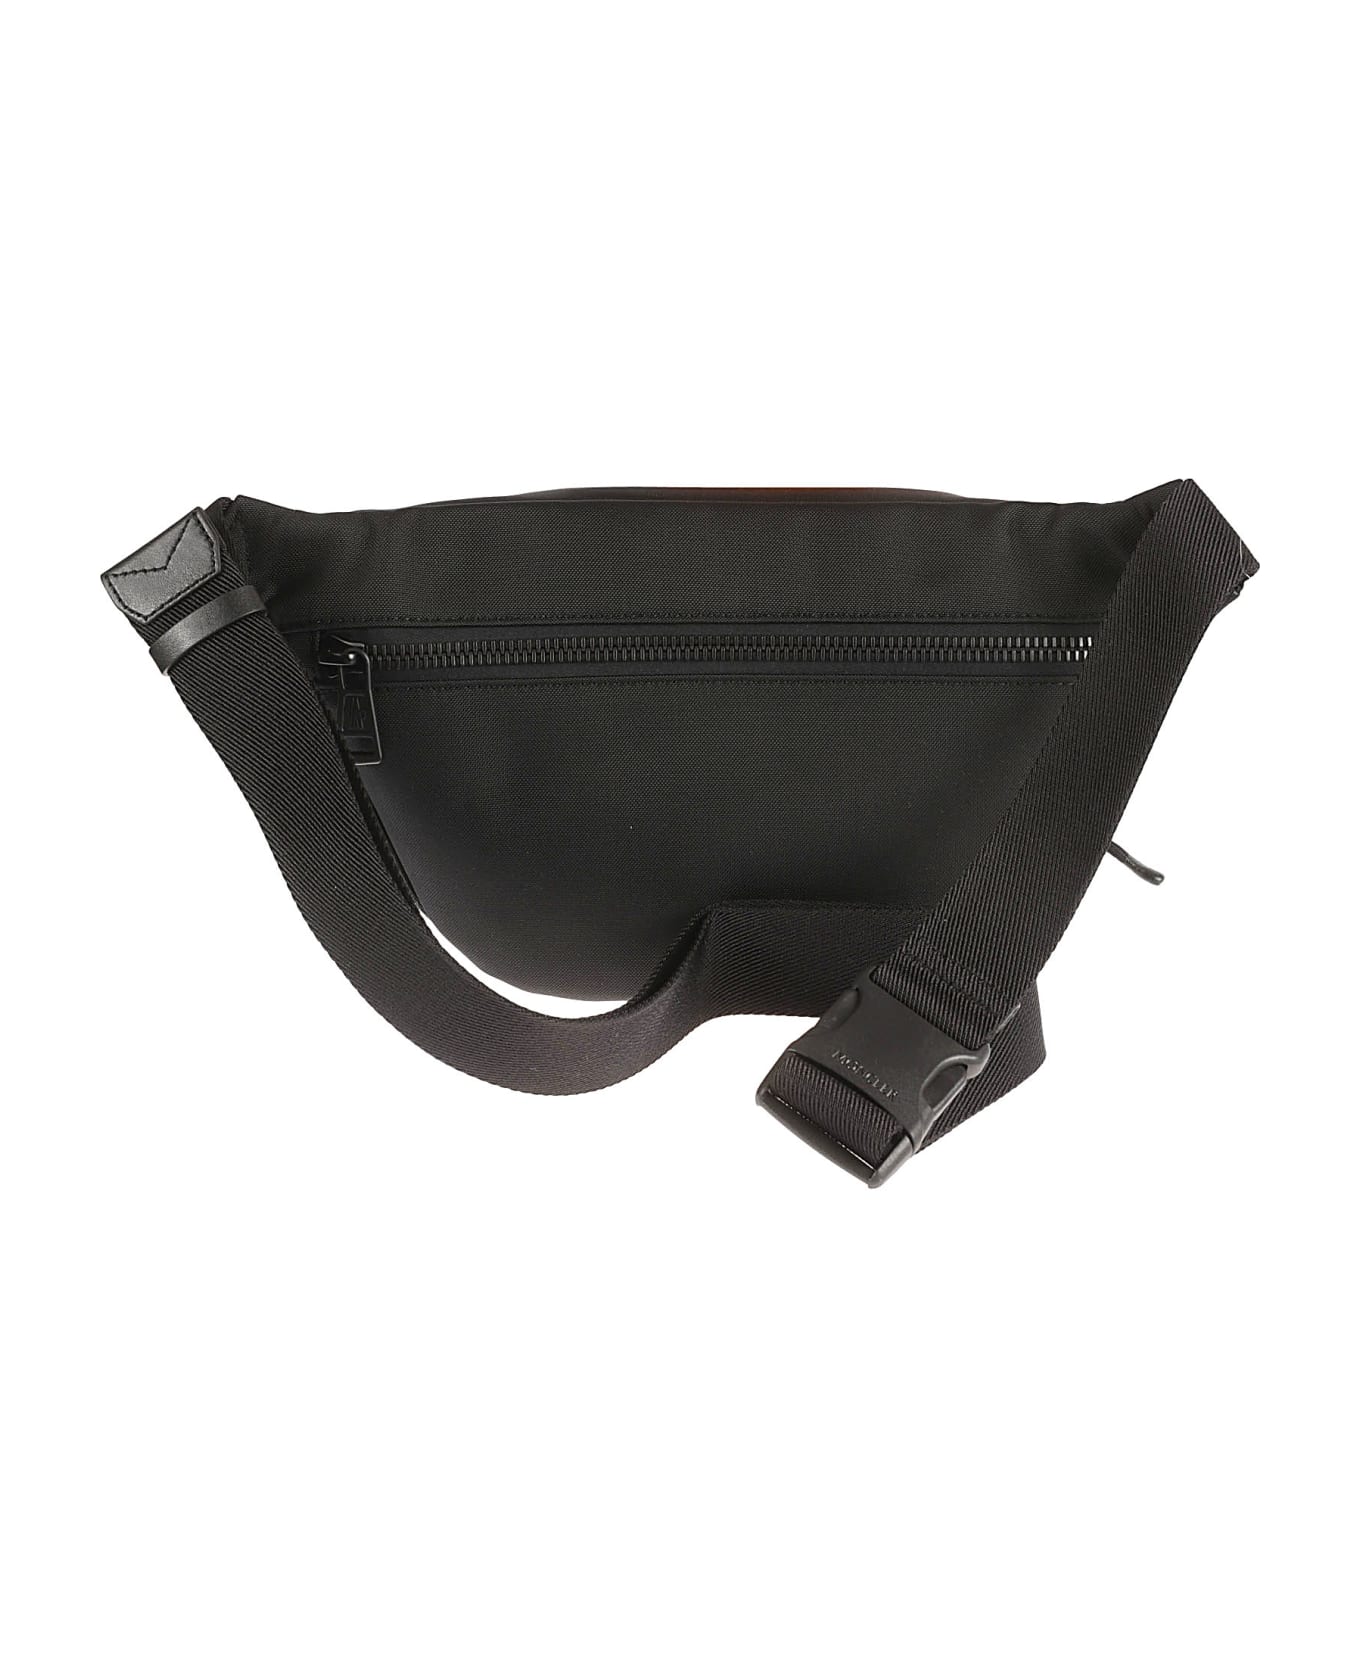 Moncler Durance Belt Bag - Black